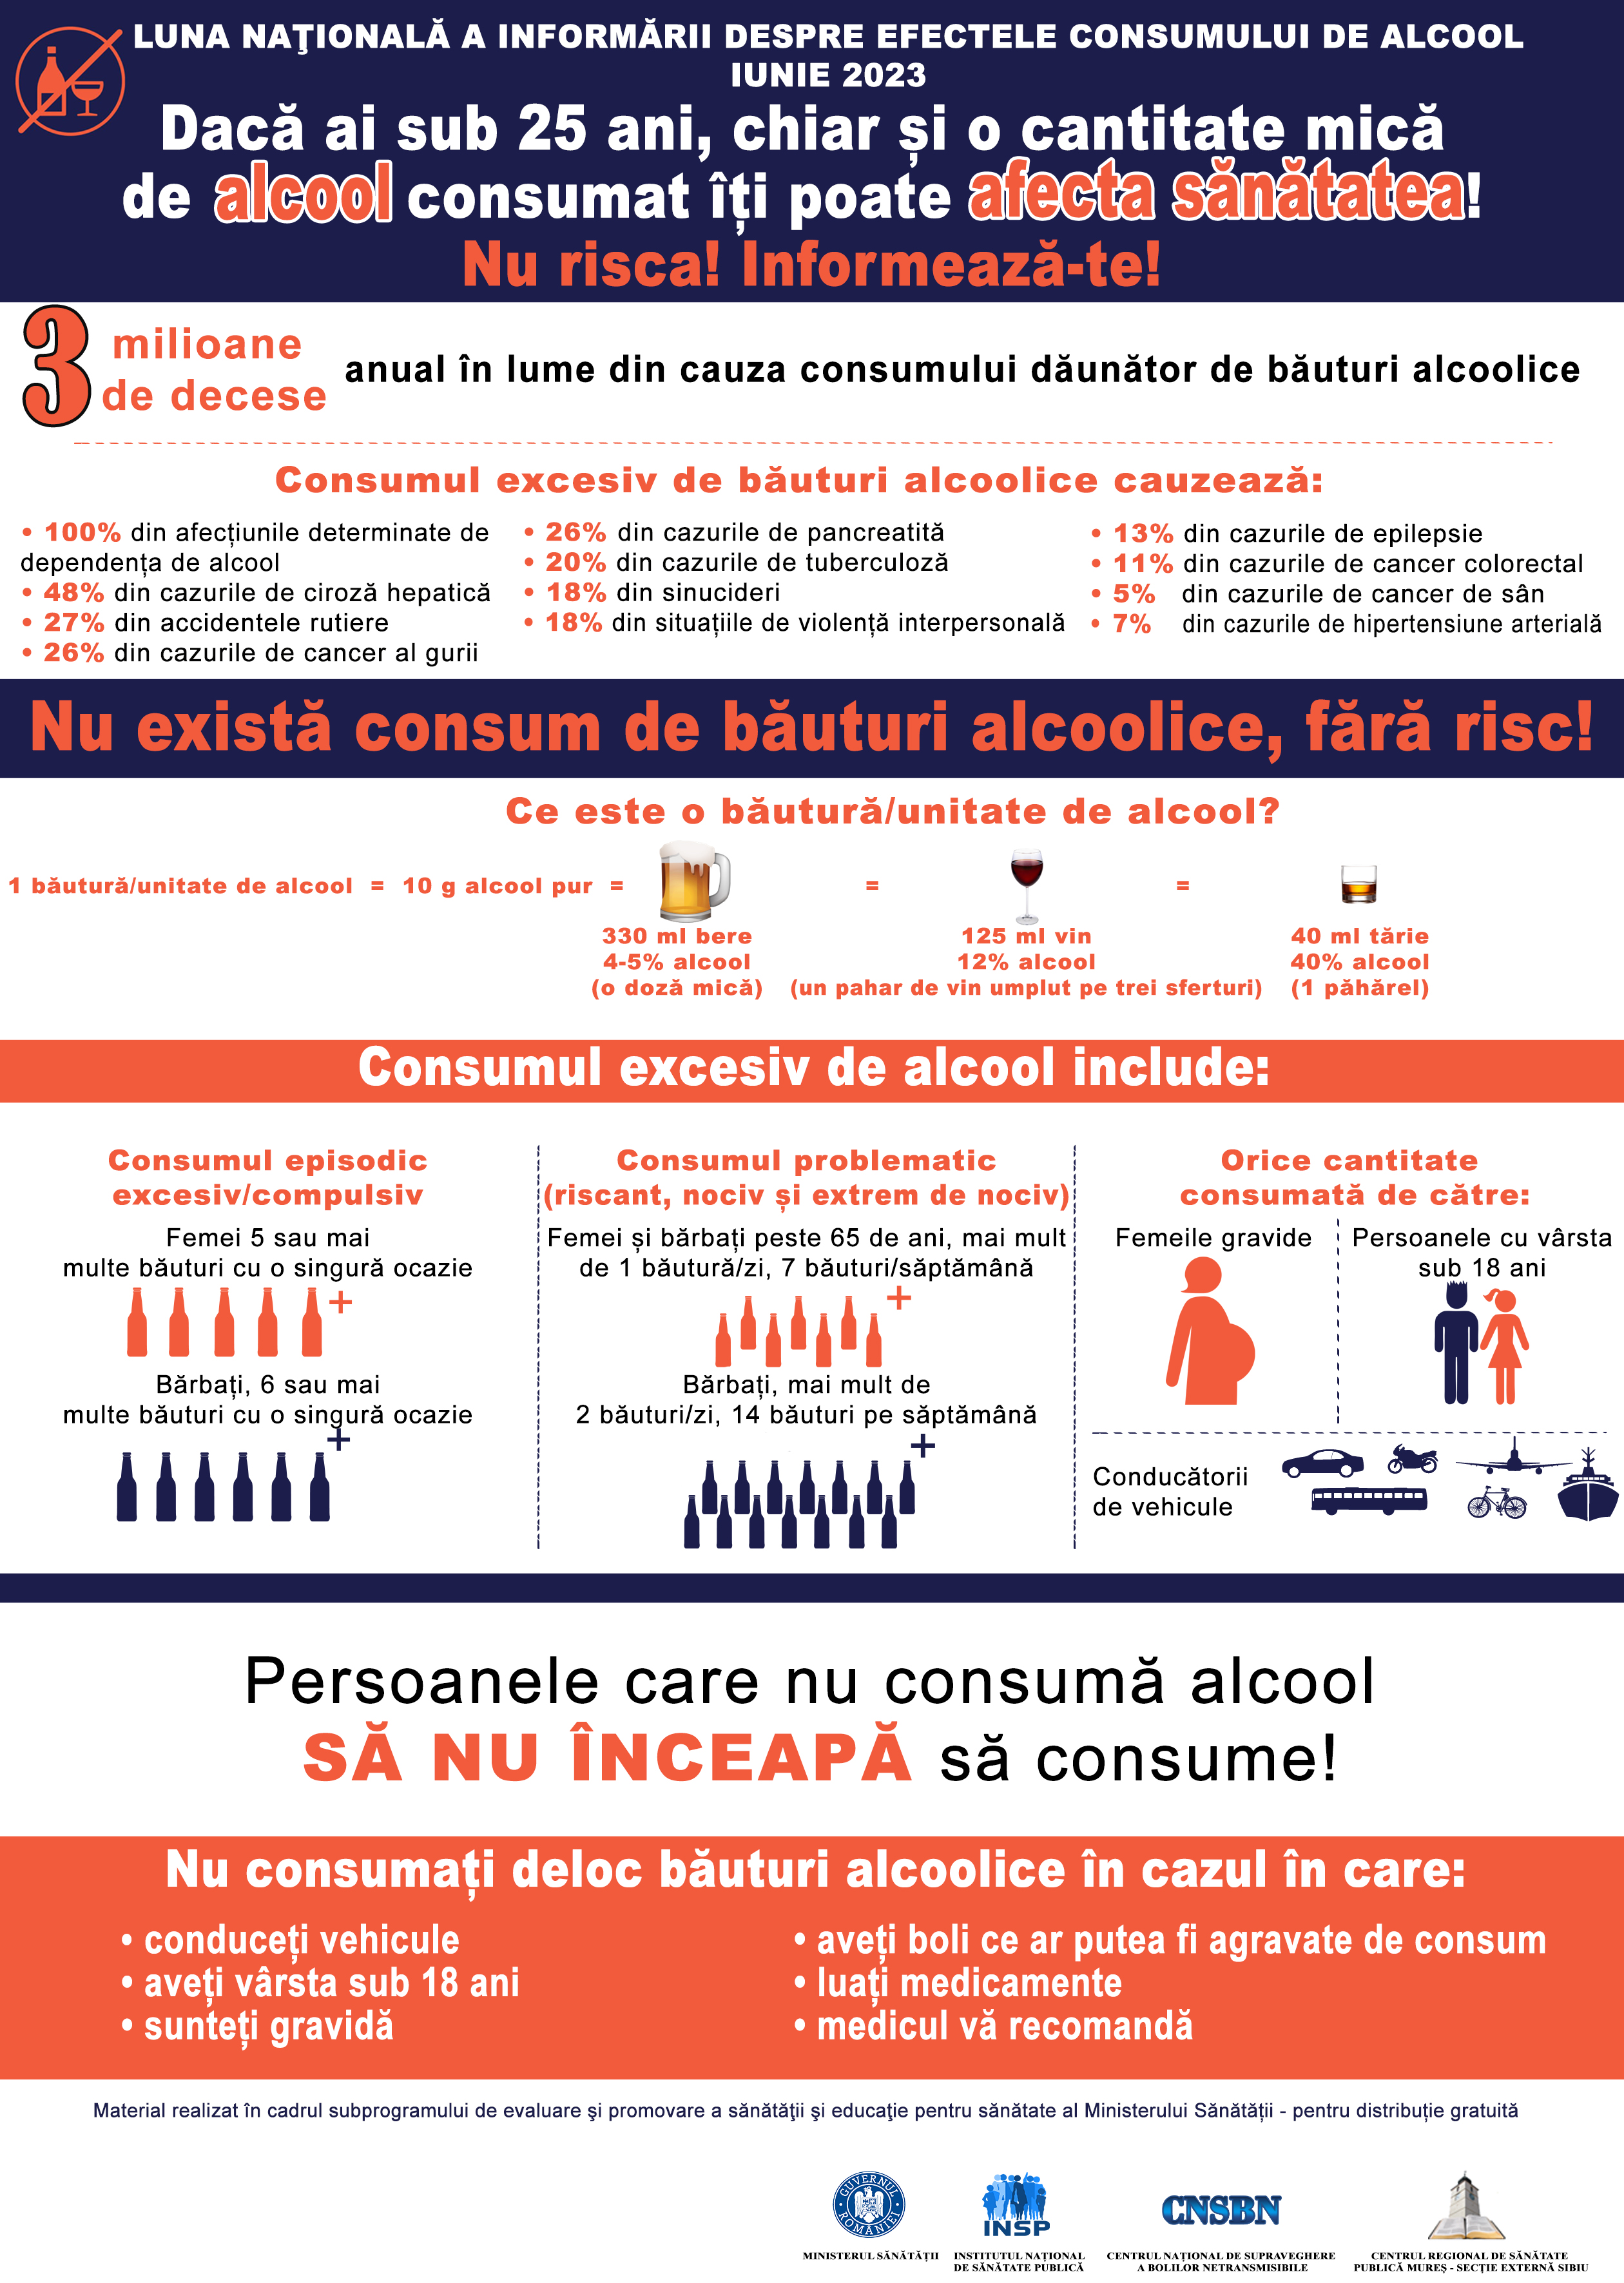 COMUNICAT DE PRESĂ - Luna națională a informării despre efectele consumului de alcool, iunie 2023